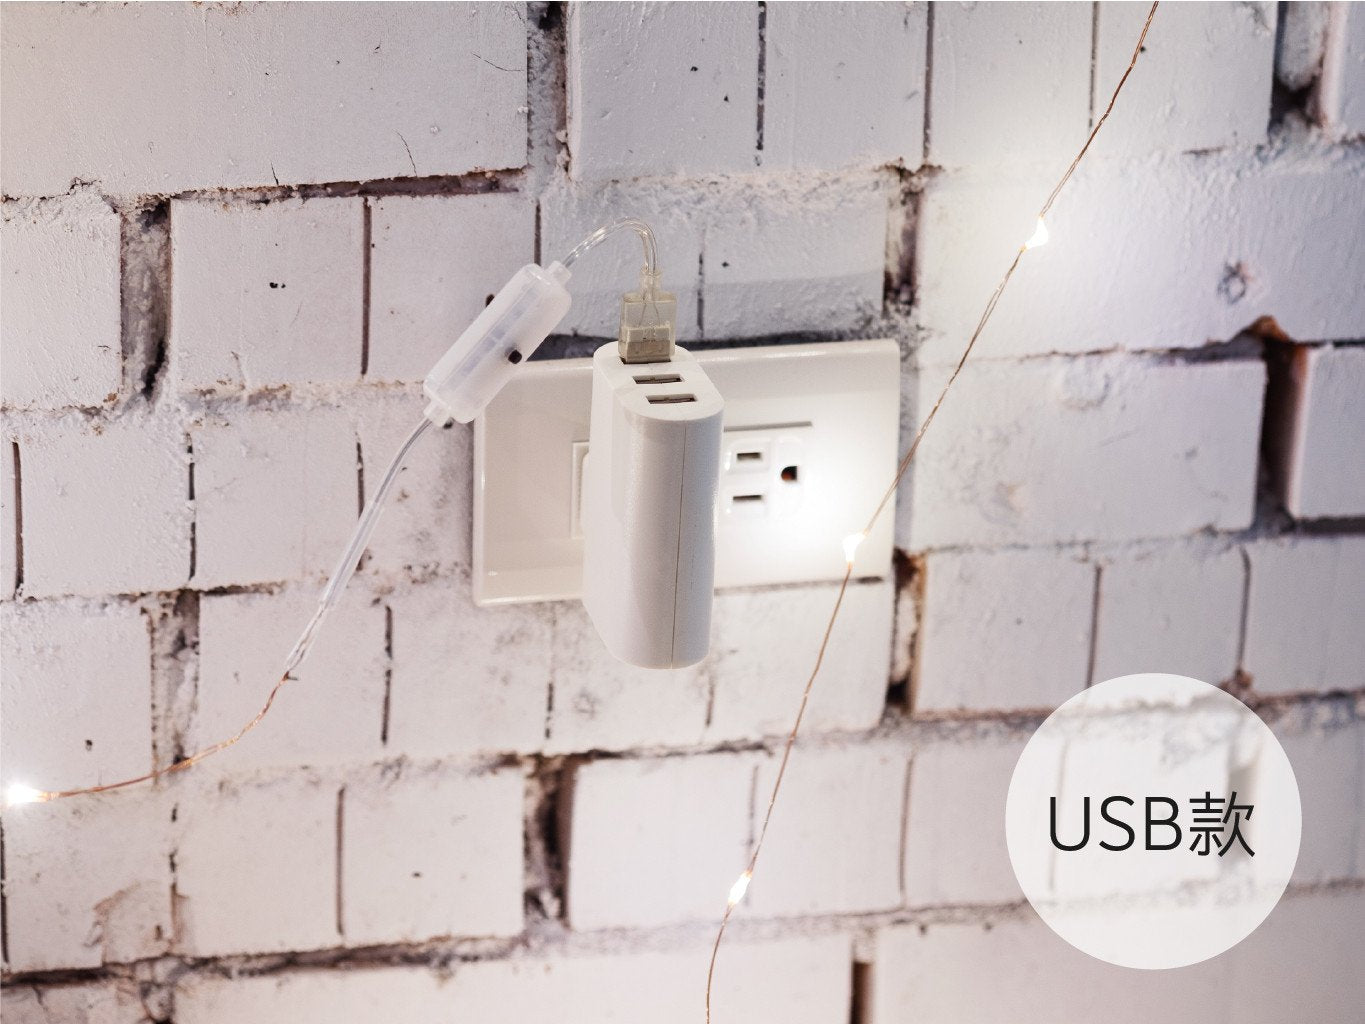 umade-星光絲線LED燈-絲線燈USB版本，隨身攜帶戶外也可使用